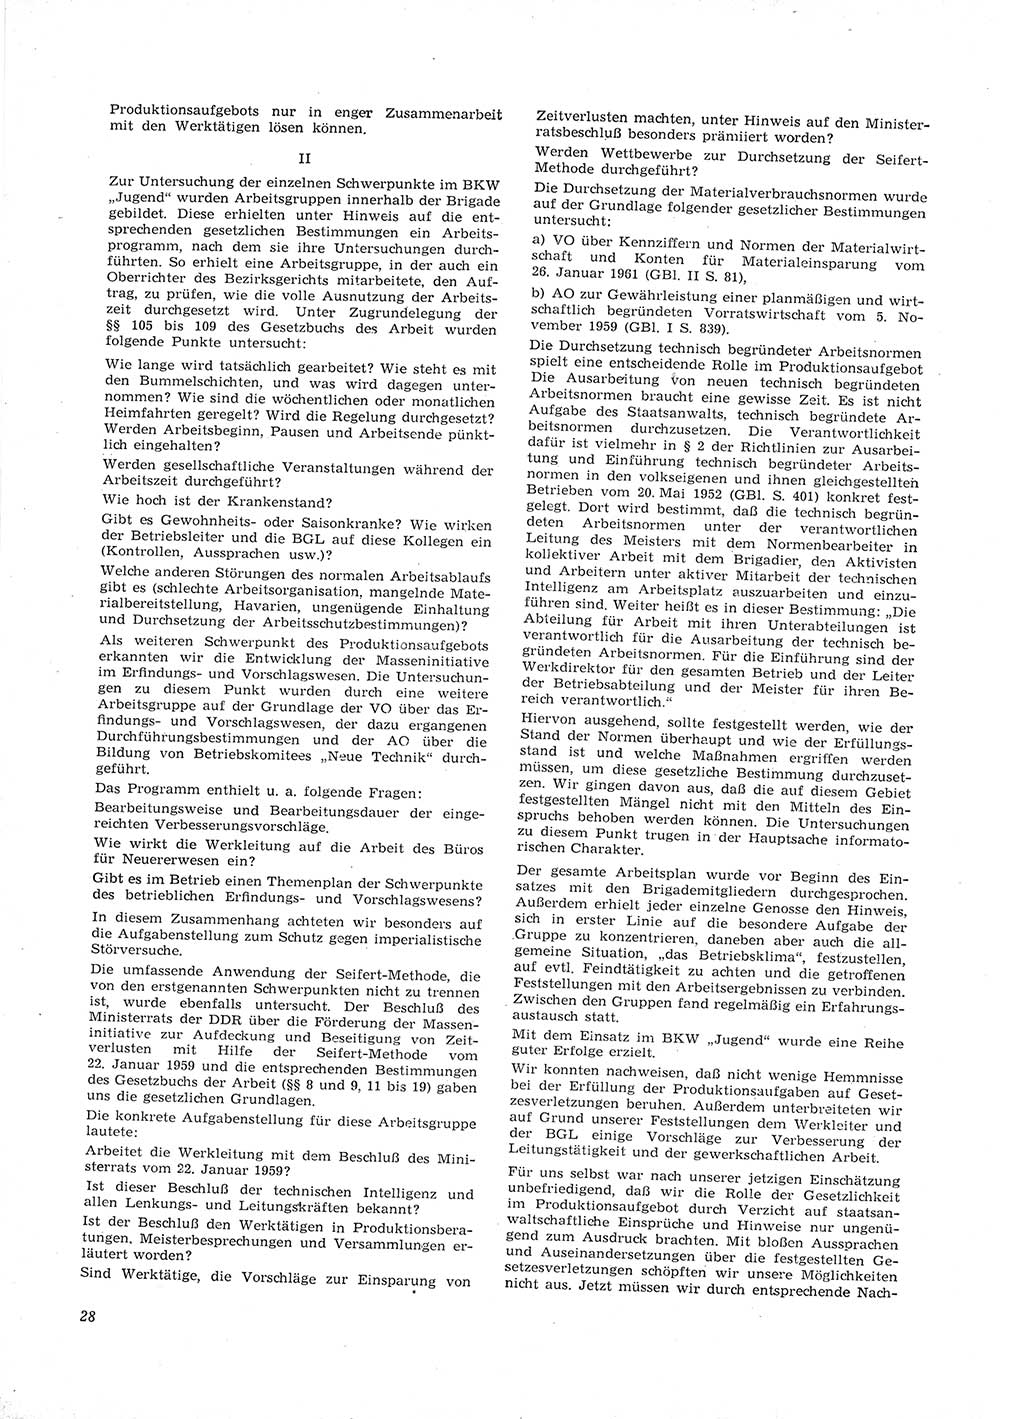 Neue Justiz (NJ), Zeitschrift für Recht und Rechtswissenschaft [Deutsche Demokratische Republik (DDR)], 16. Jahrgang 1962, Seite 28 (NJ DDR 1962, S. 28)